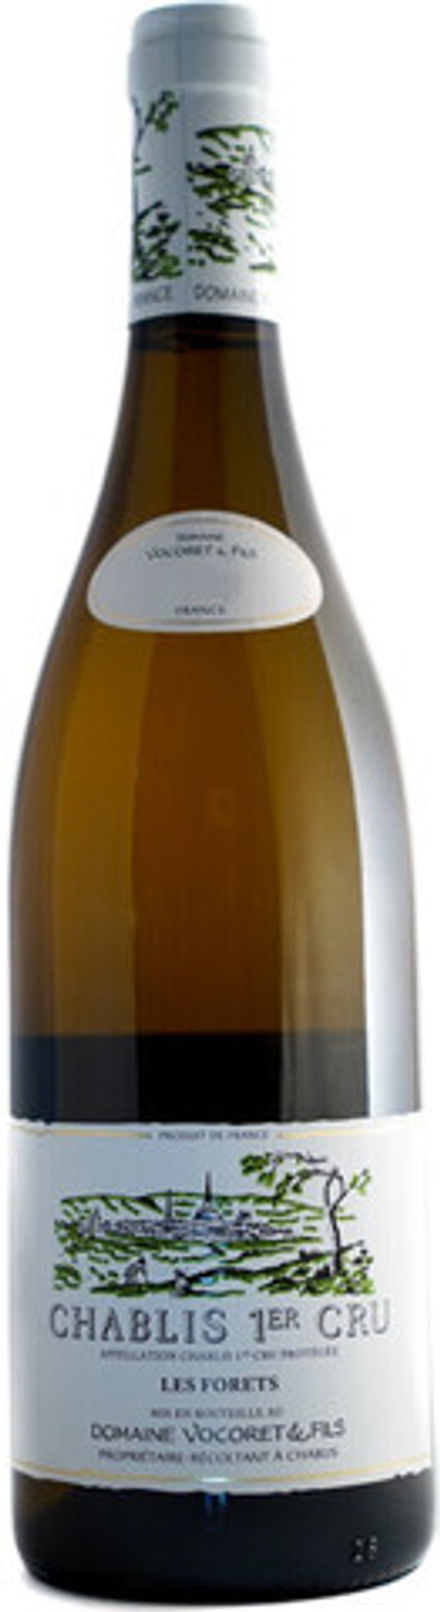 Вино Domaine Vocoret & Fils Chablis 1er Cru Les Forets AOP, 0,75 л.